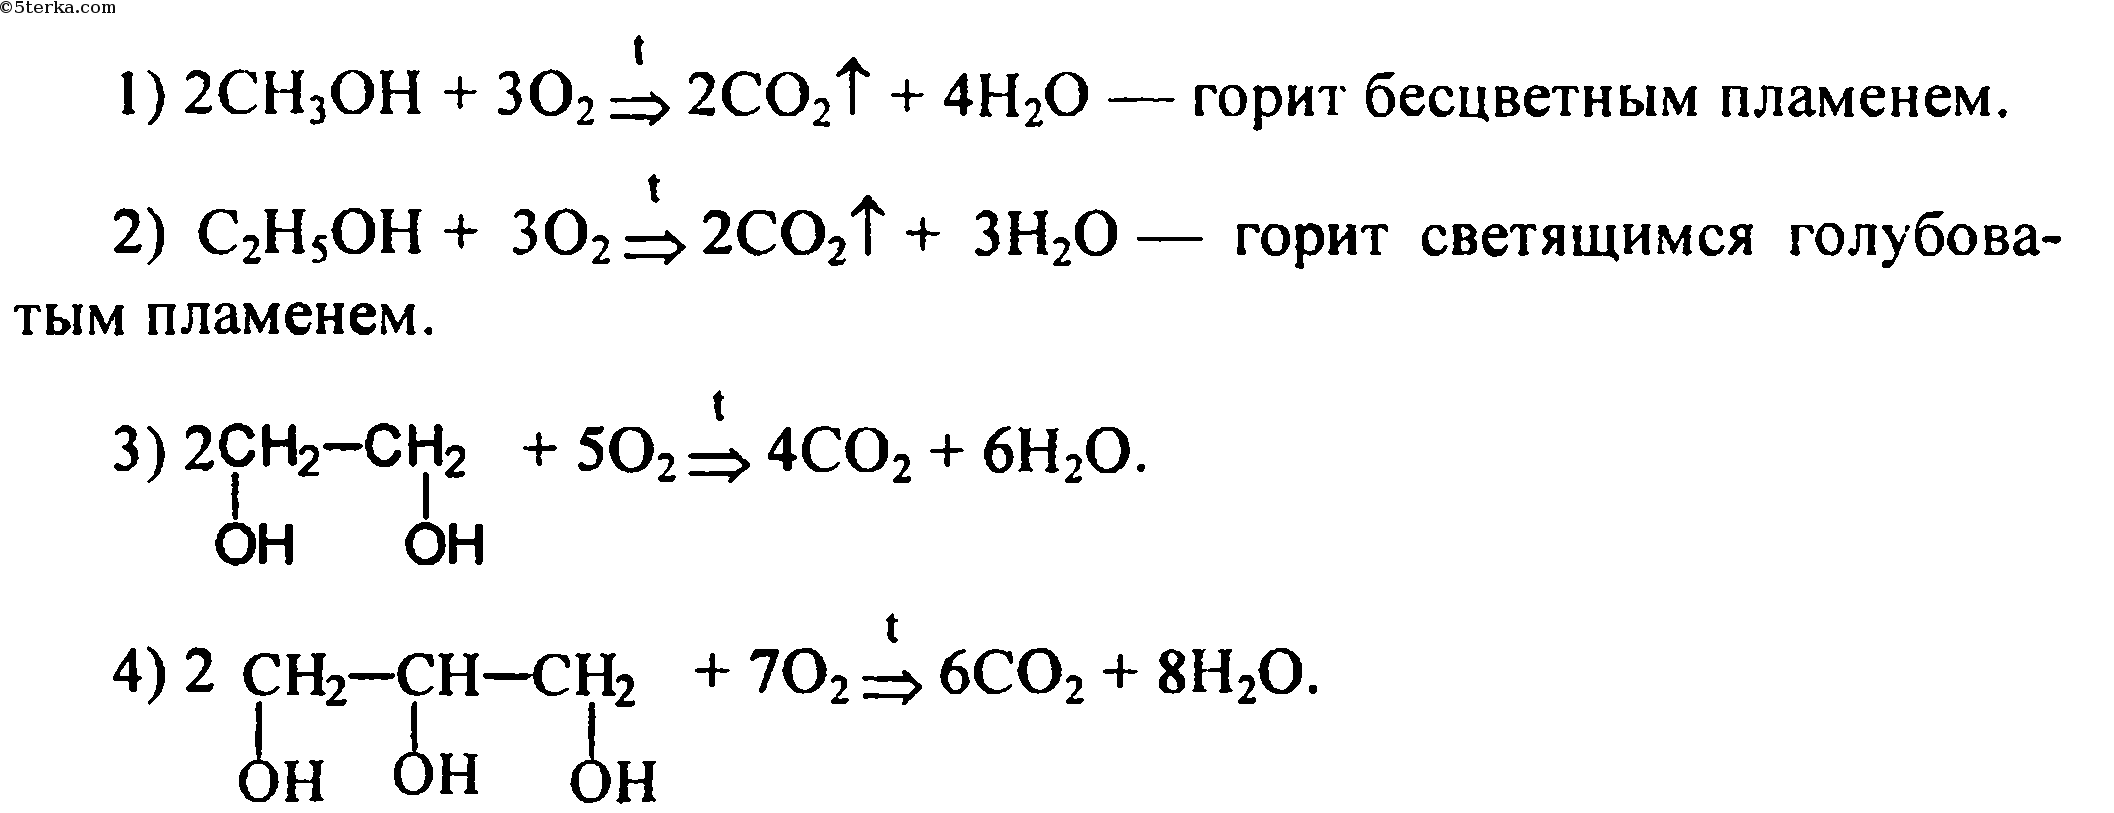 Напишите уравнения реакций горения спиртов и фенолов метанола